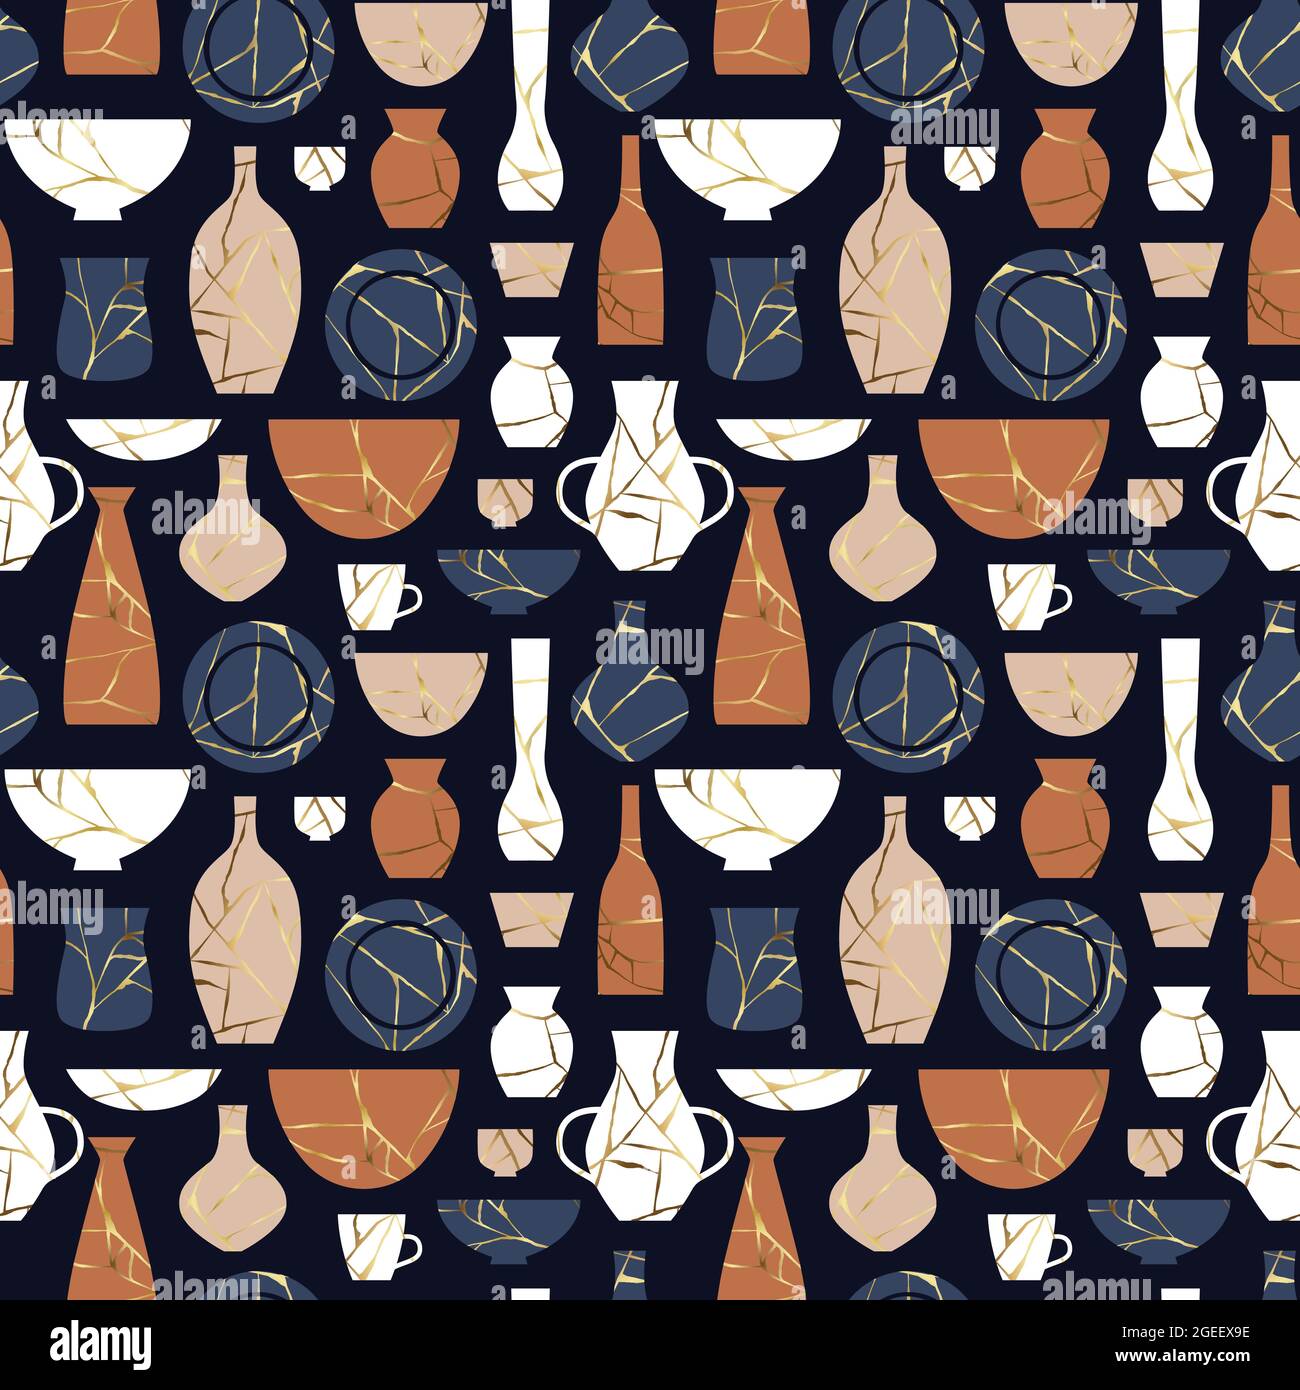 Kintsugi Keramik Keramik Dekoration nahtlose Muster. Traditionelle japanische Kultur Vase und Glas Hintergrund, Home-Dekor minimalistische Tapete. Stock Vektor